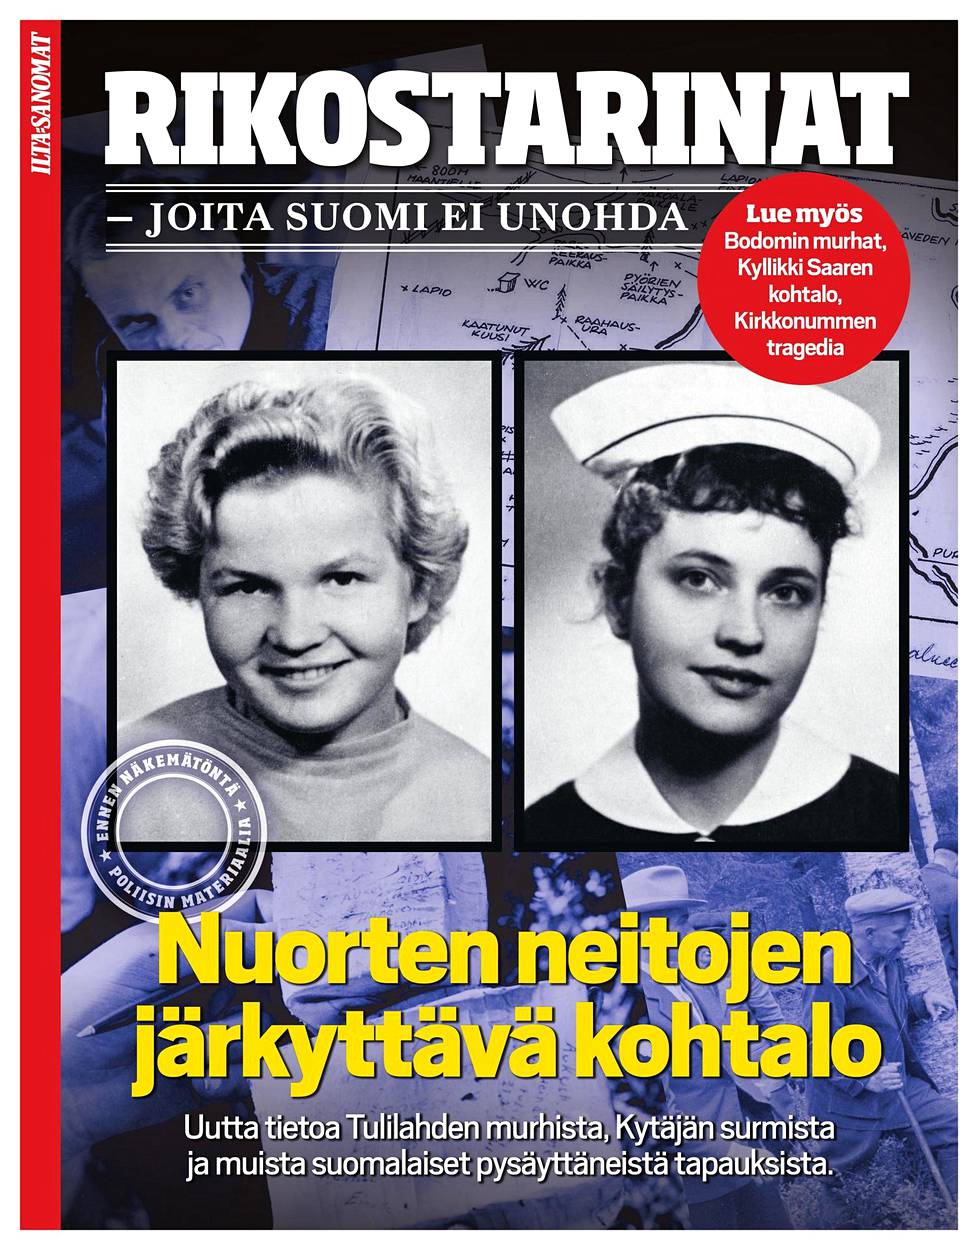 Lisää Suomen rikoshistorian tapauksista voit lukea Ilta-Sanomien erikoisjulkaisusta Rikostarinat, joita Suomi ei unohda.